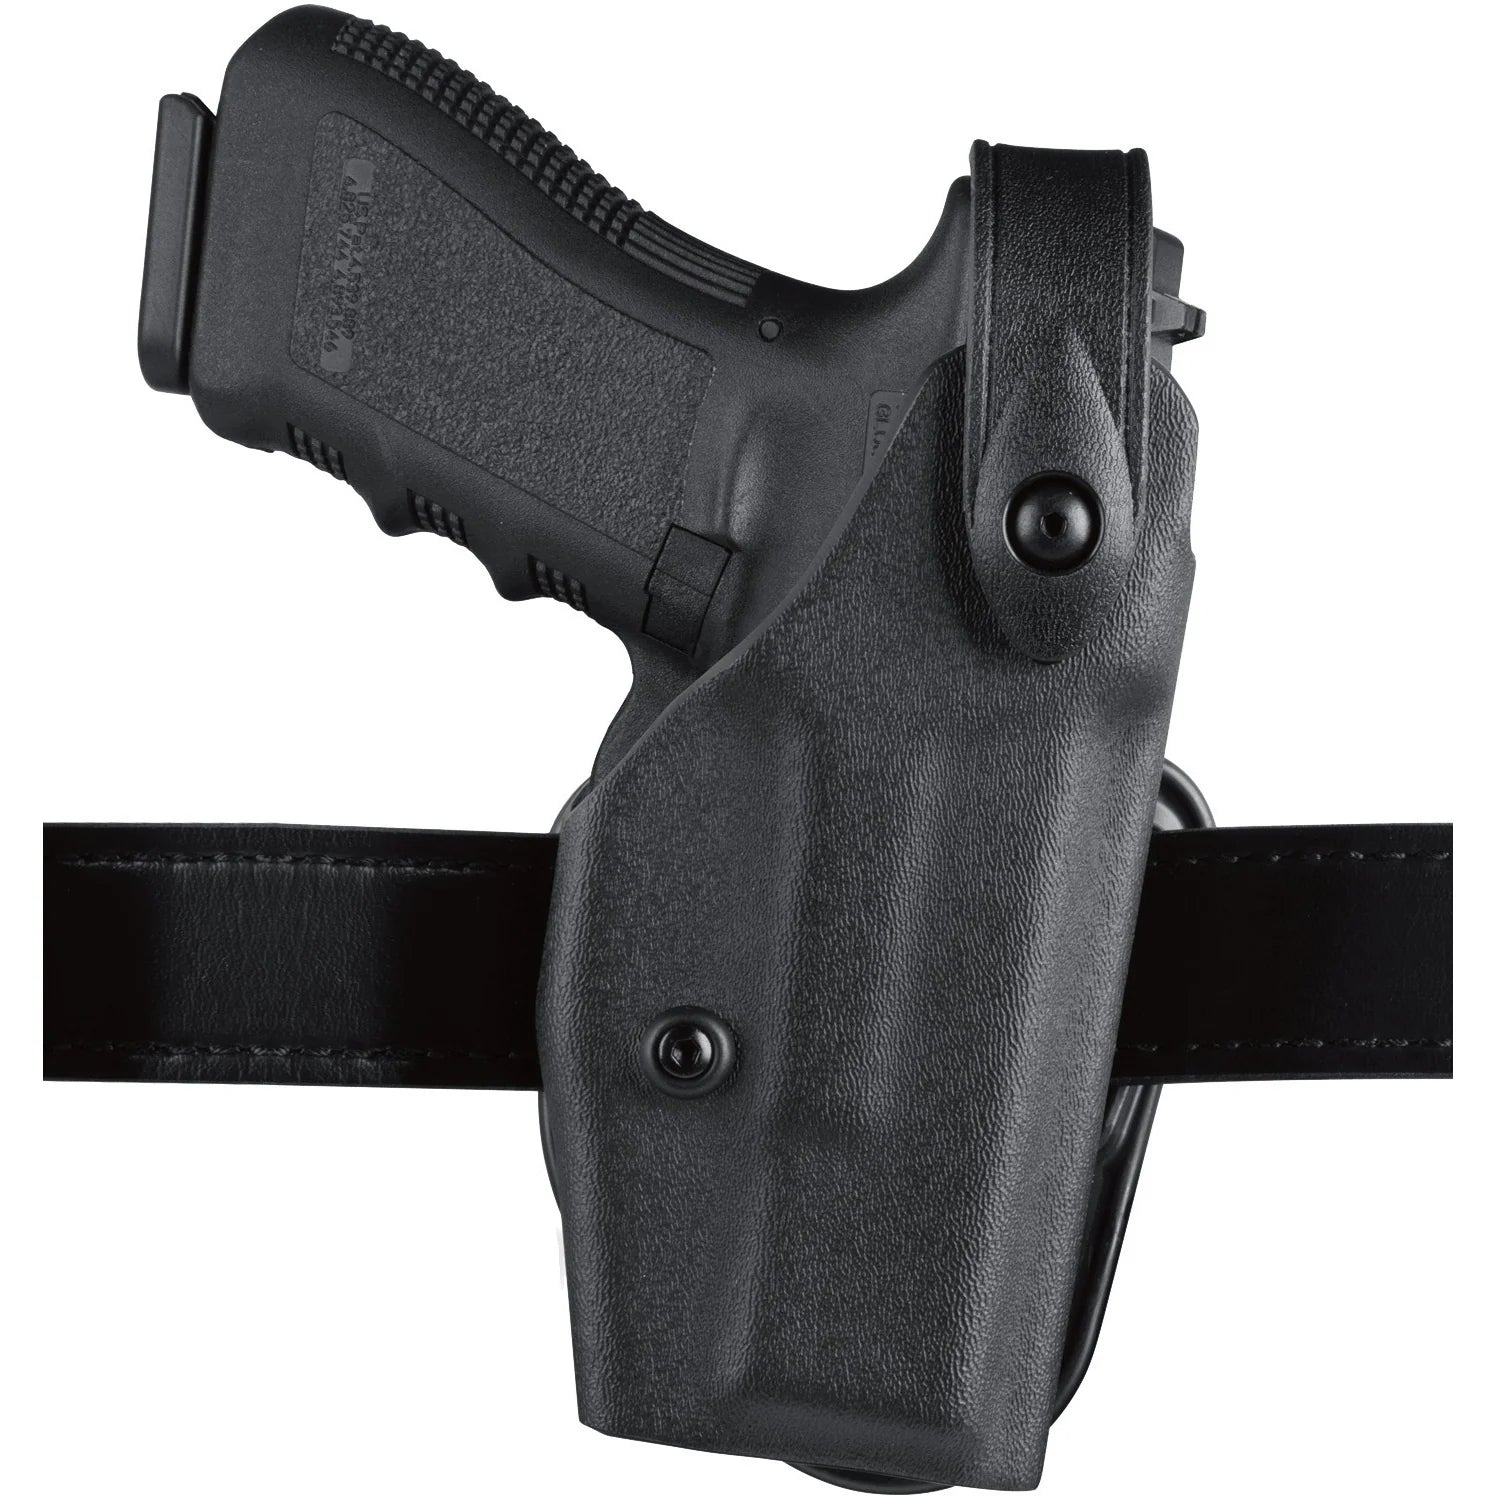 Safariland Model 6287 SLS Belt Slide Concealment Holster - Tactical & Duty Gear